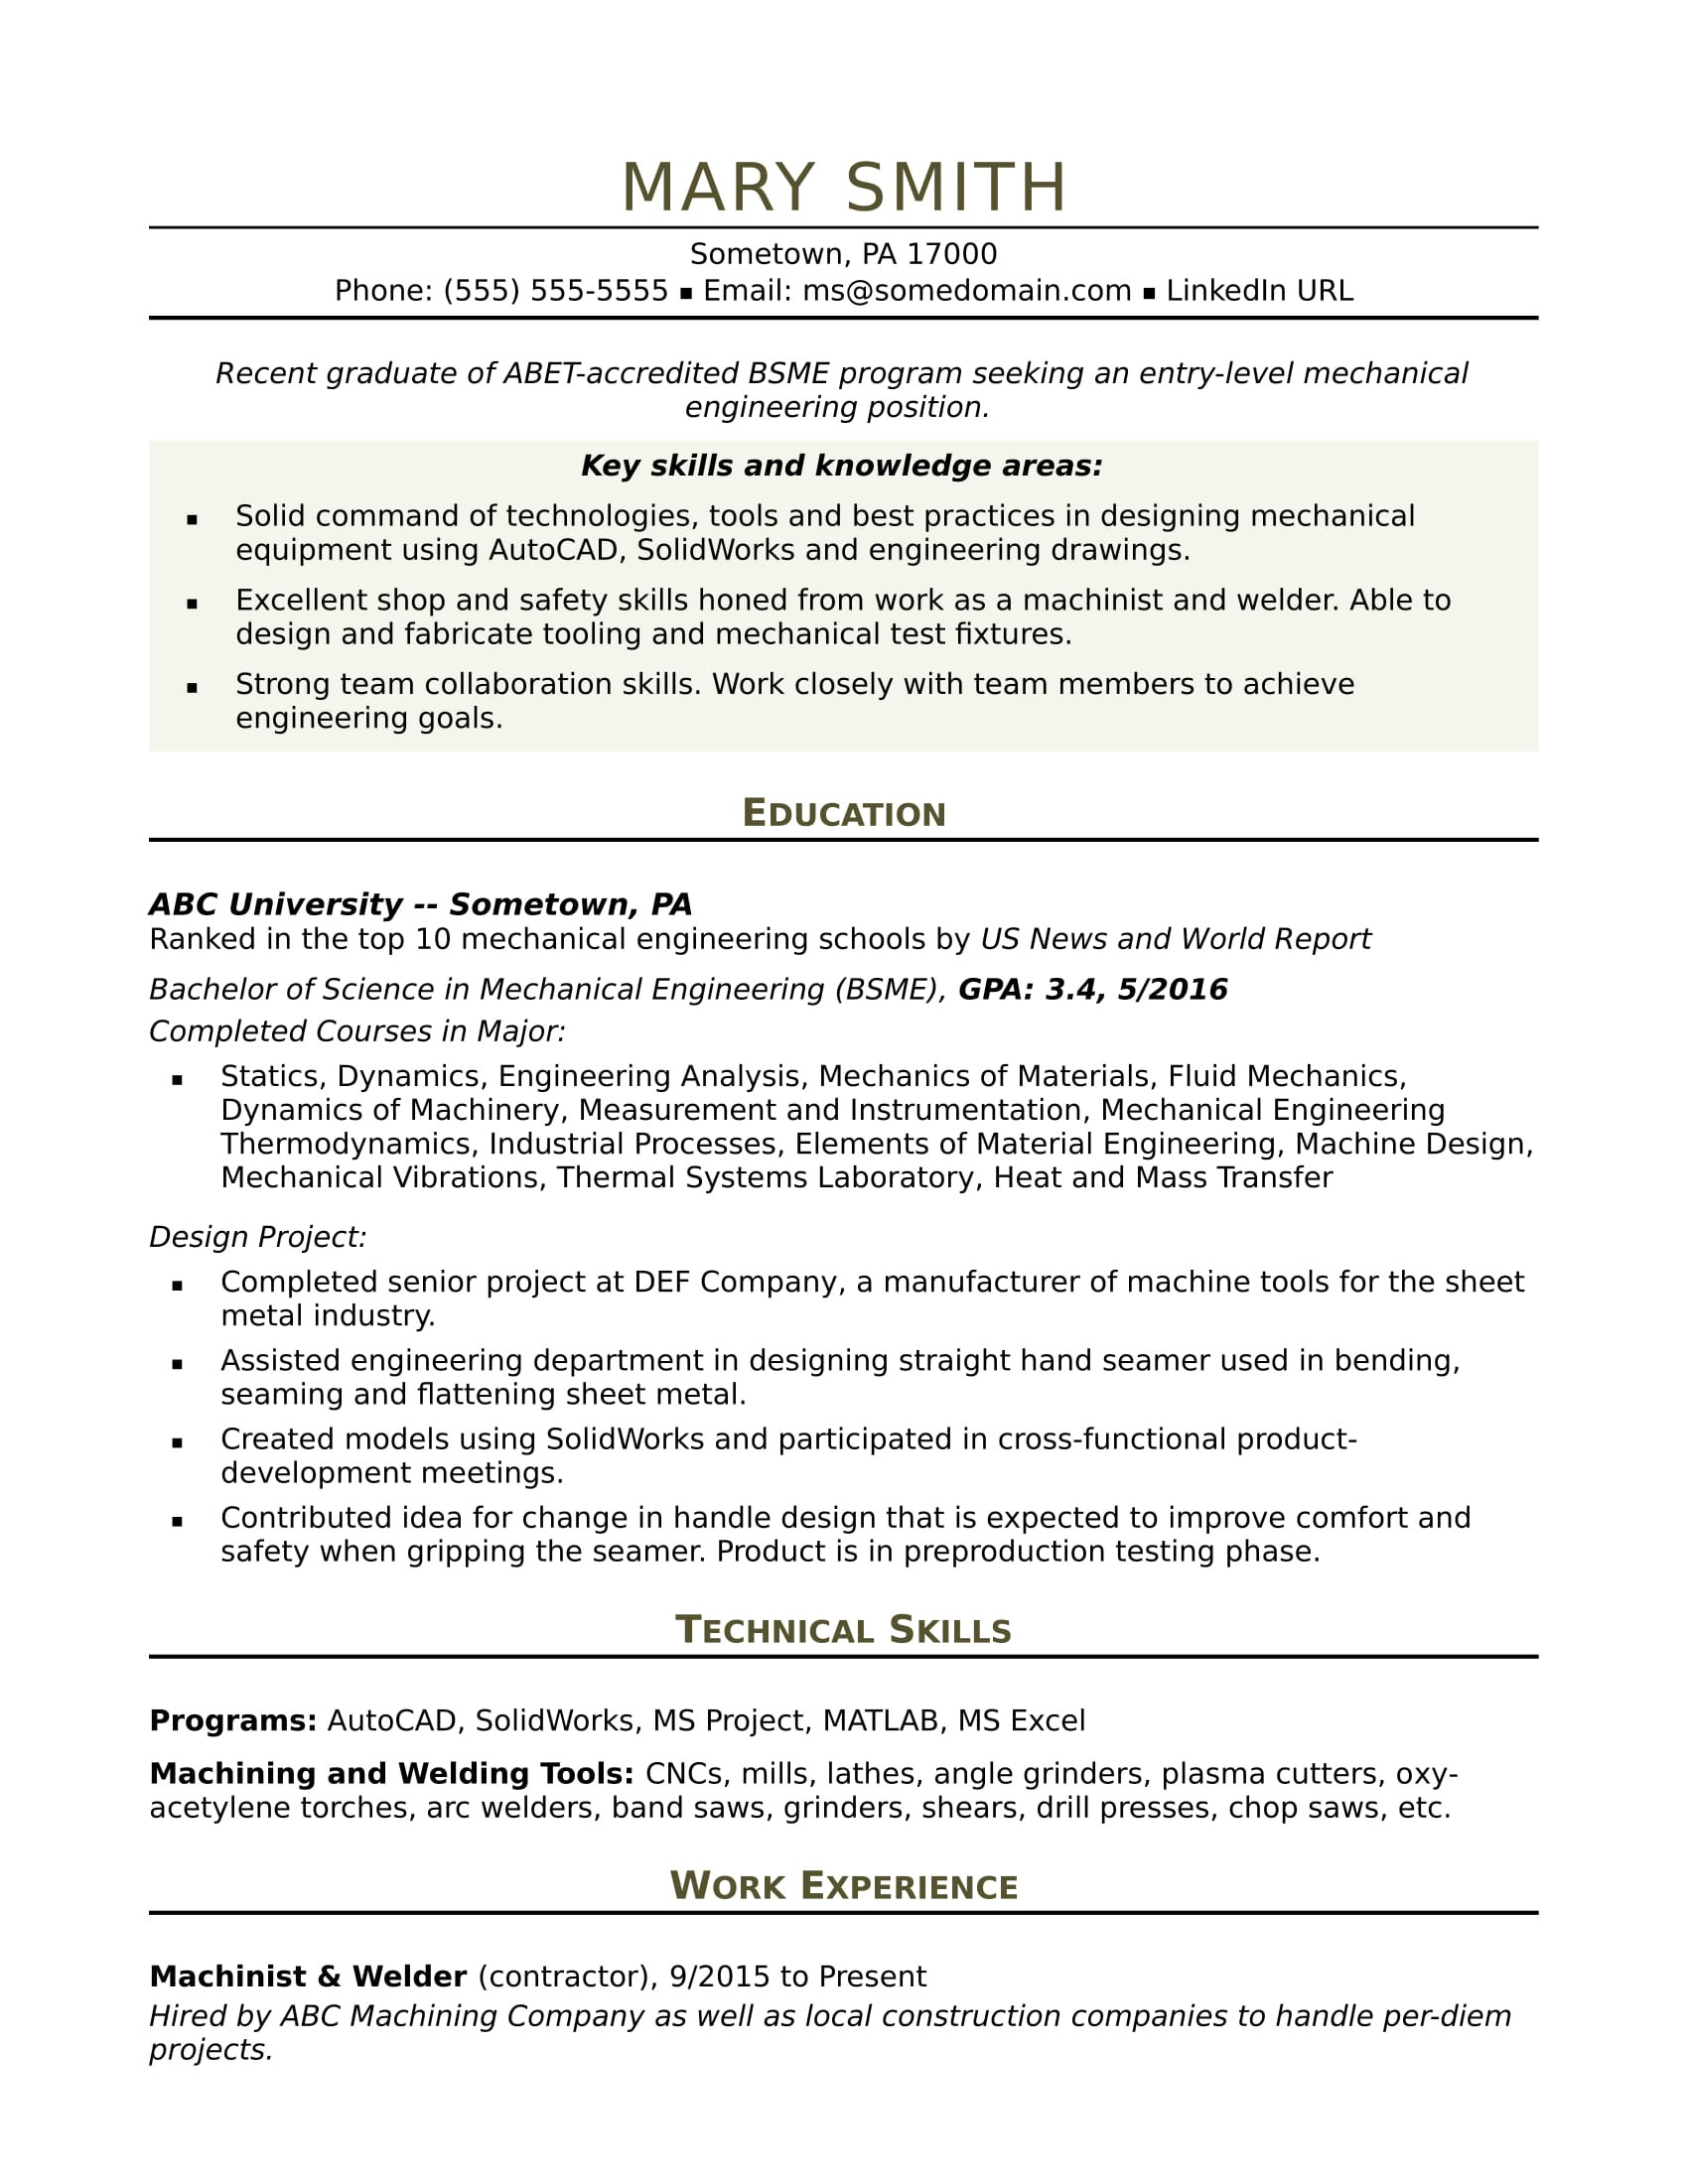 Sample Resume for Entry Level Mechanical Engineer Sample Resume for An Entry Level Mechanical Engineer